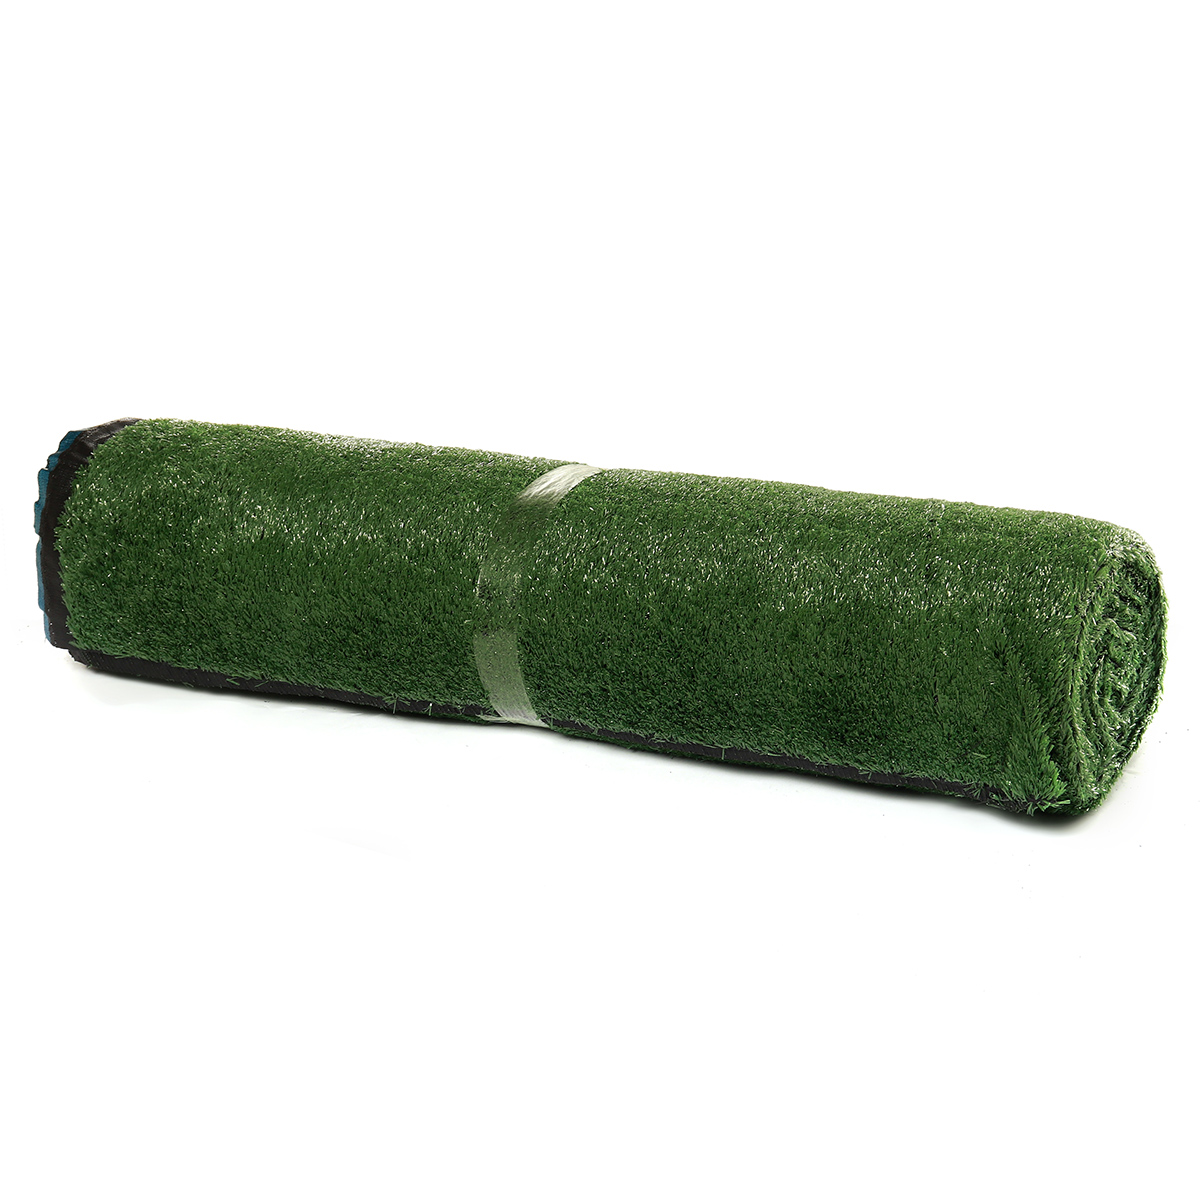 15mm-Artificial-Grass-Mat-Lawn-Synthetic-Green-Yard-Garden-InOutdoor-1715021-7